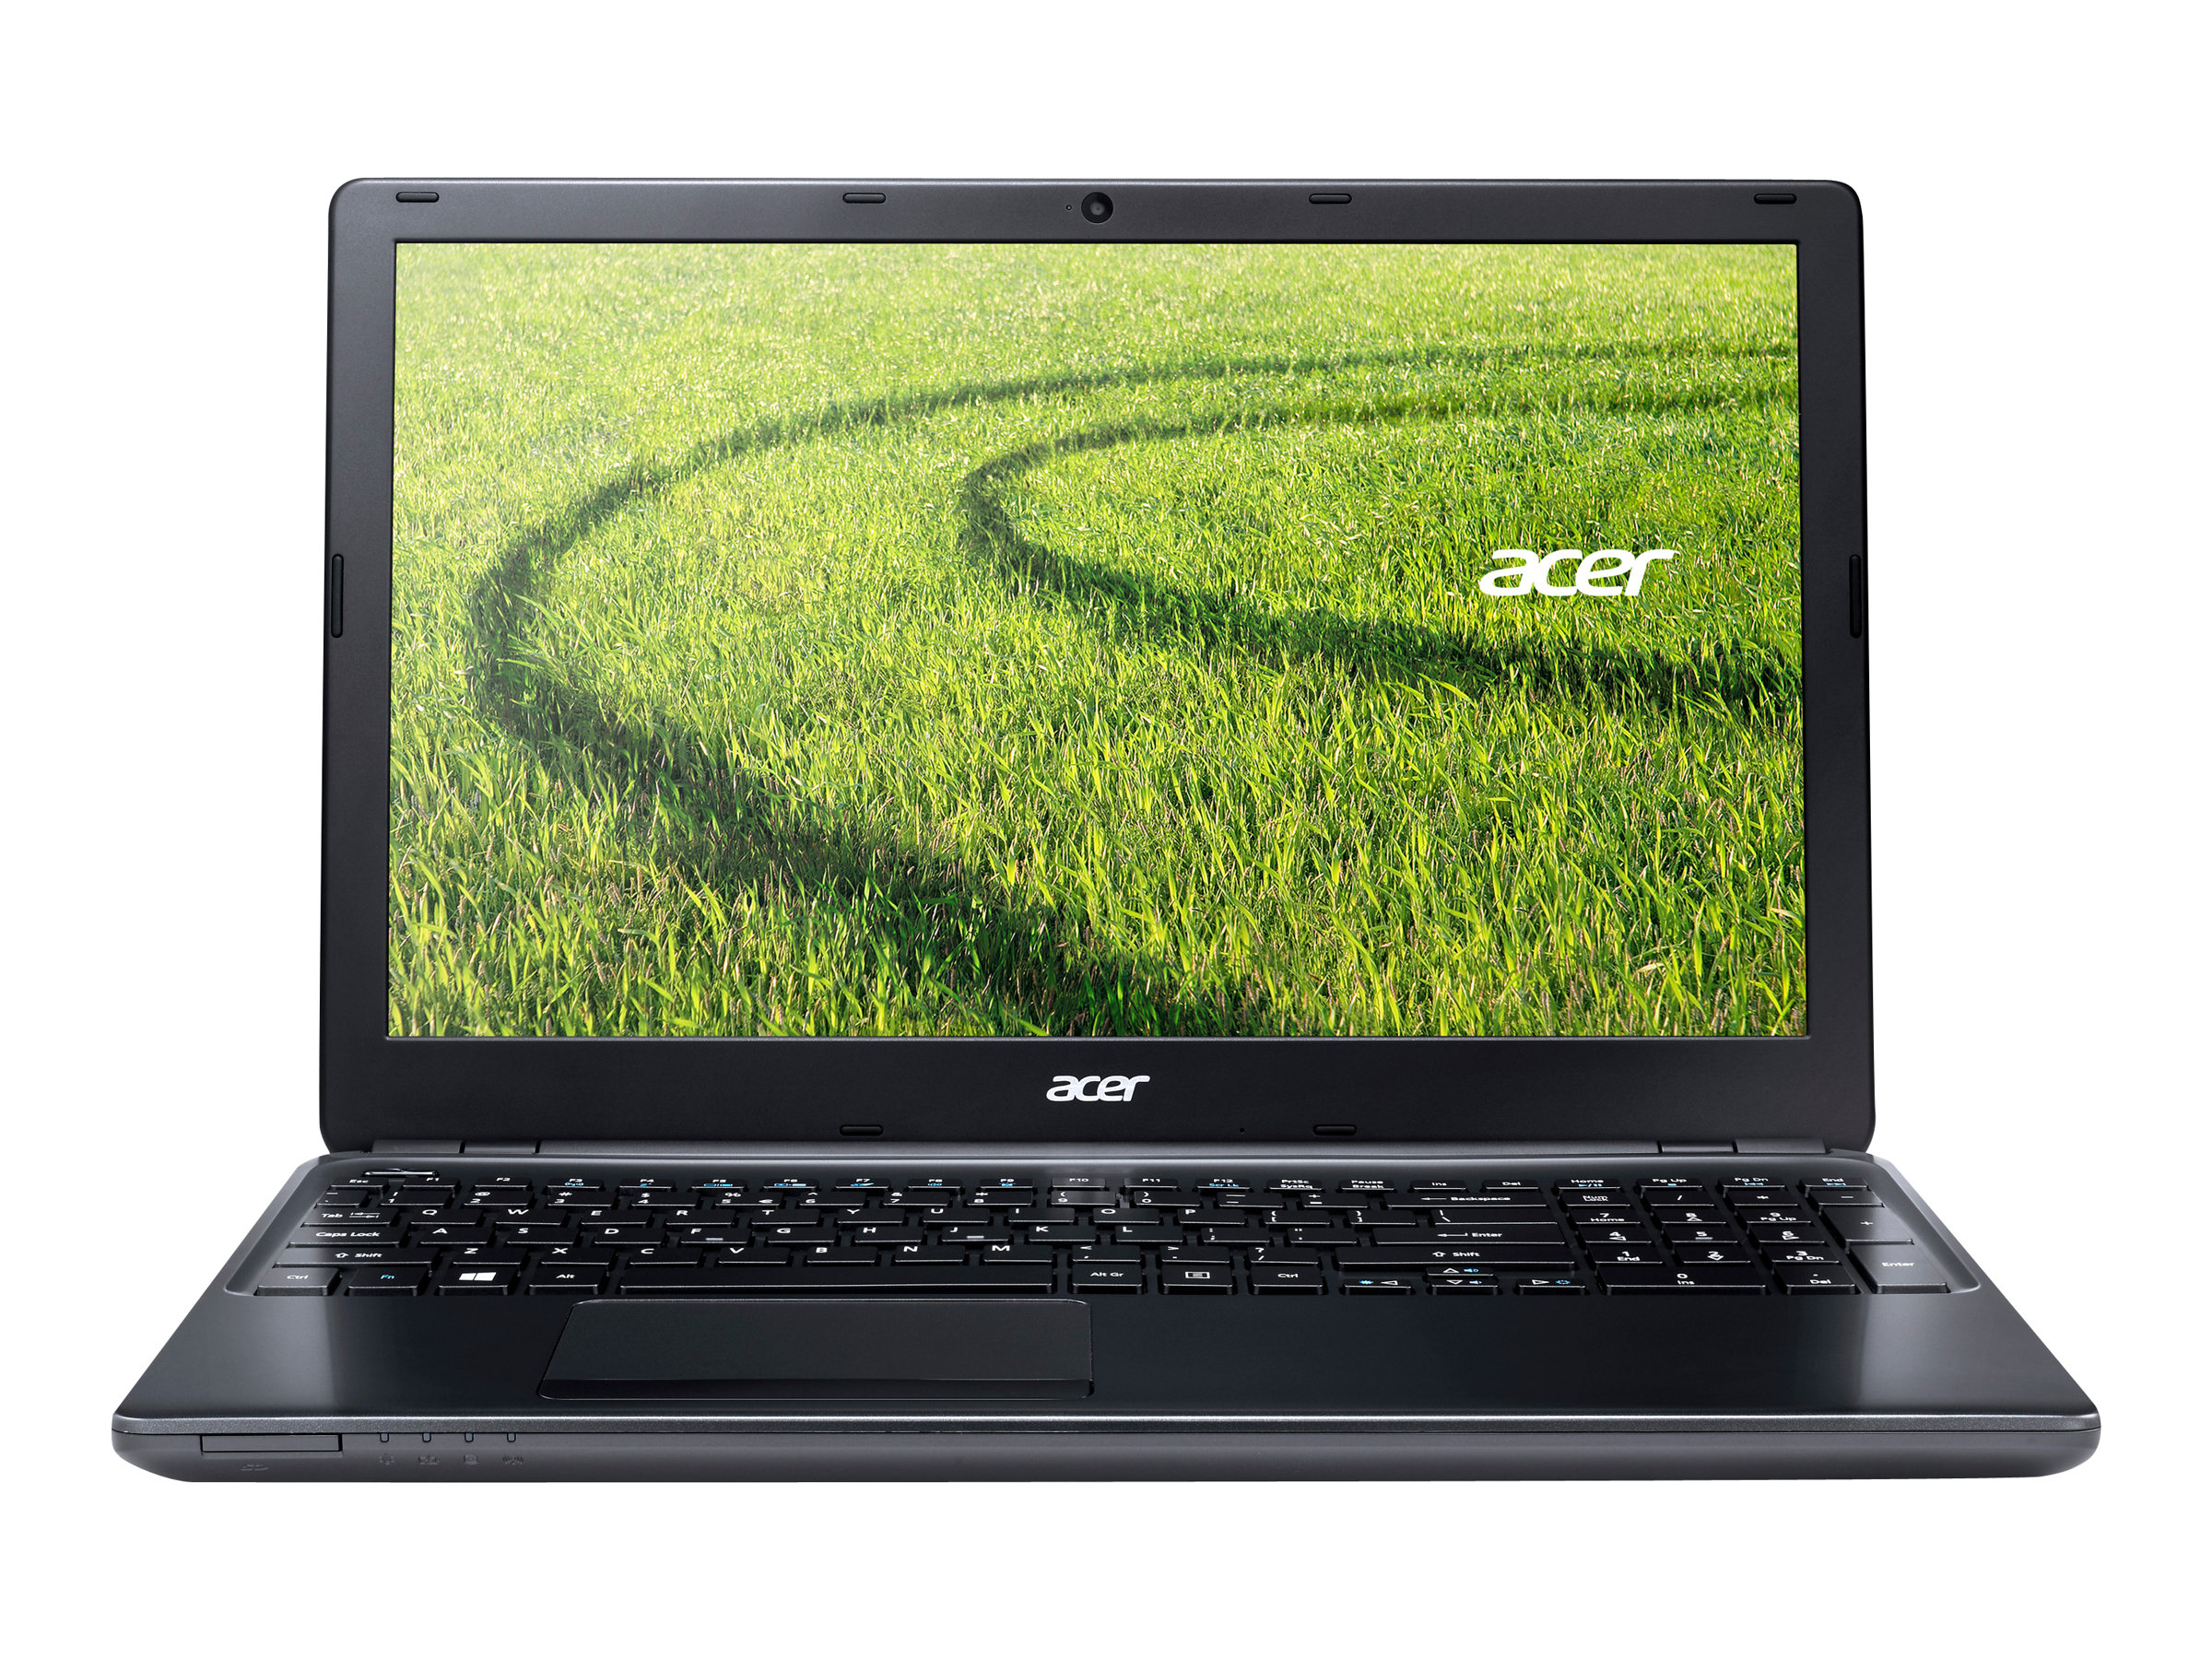 Acer Aspire E1 (522)